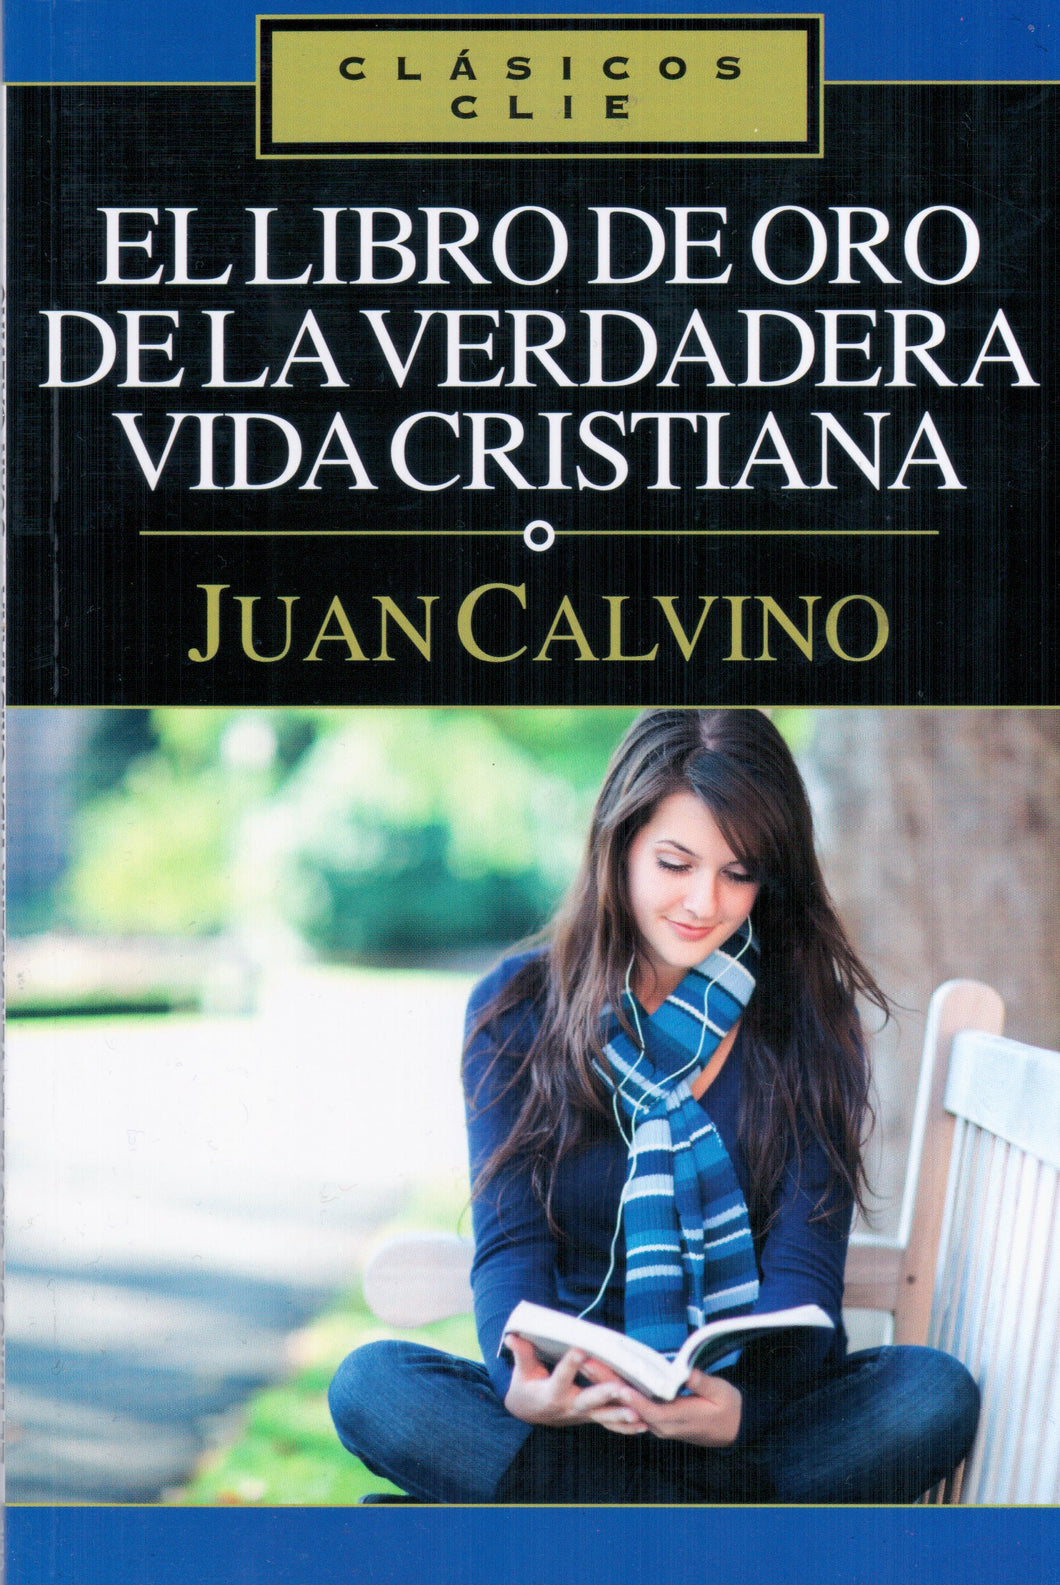 El libro de oro de la verdadera vida cristiana | Juan Calvino | Editorial Clie 